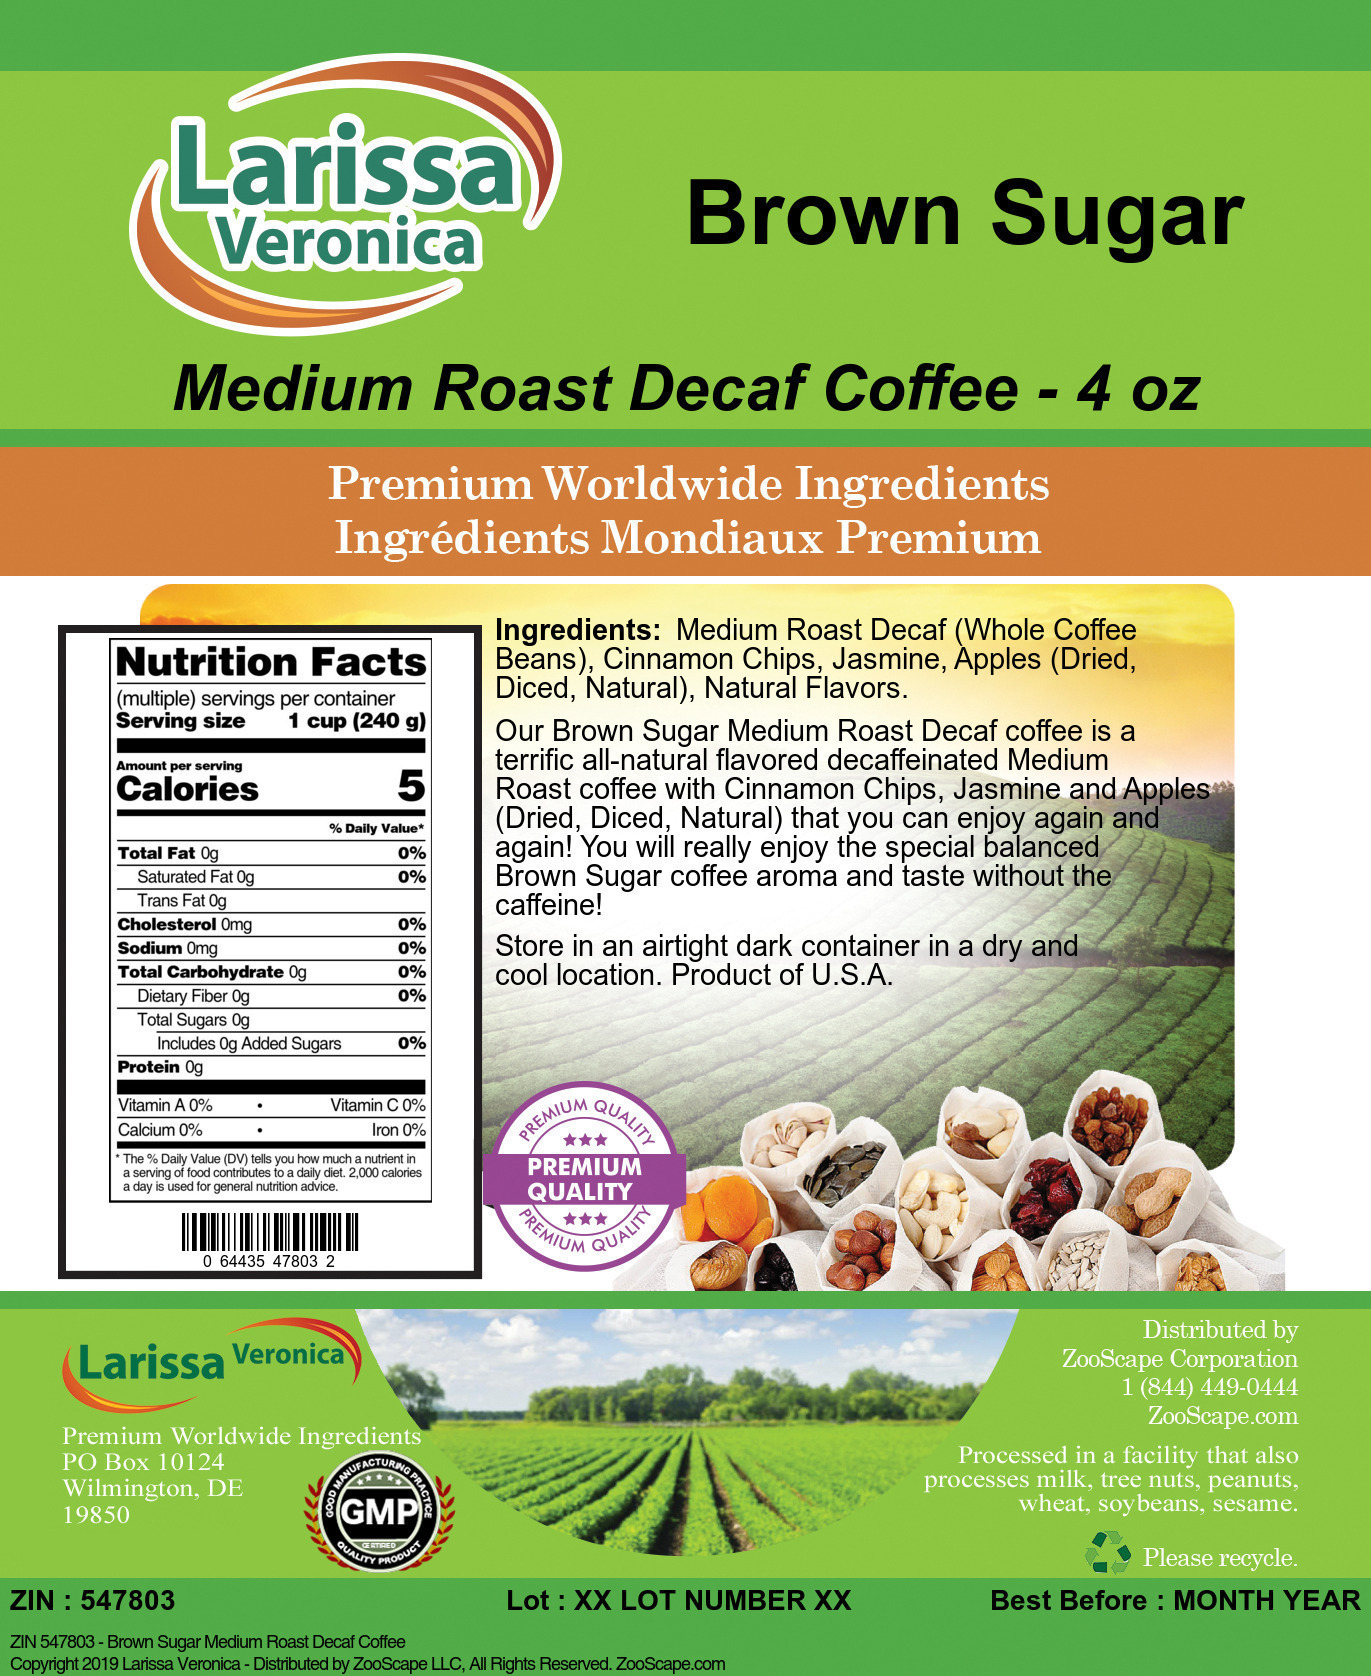 Brown Sugar Medium Roast Decaf Coffee - Label